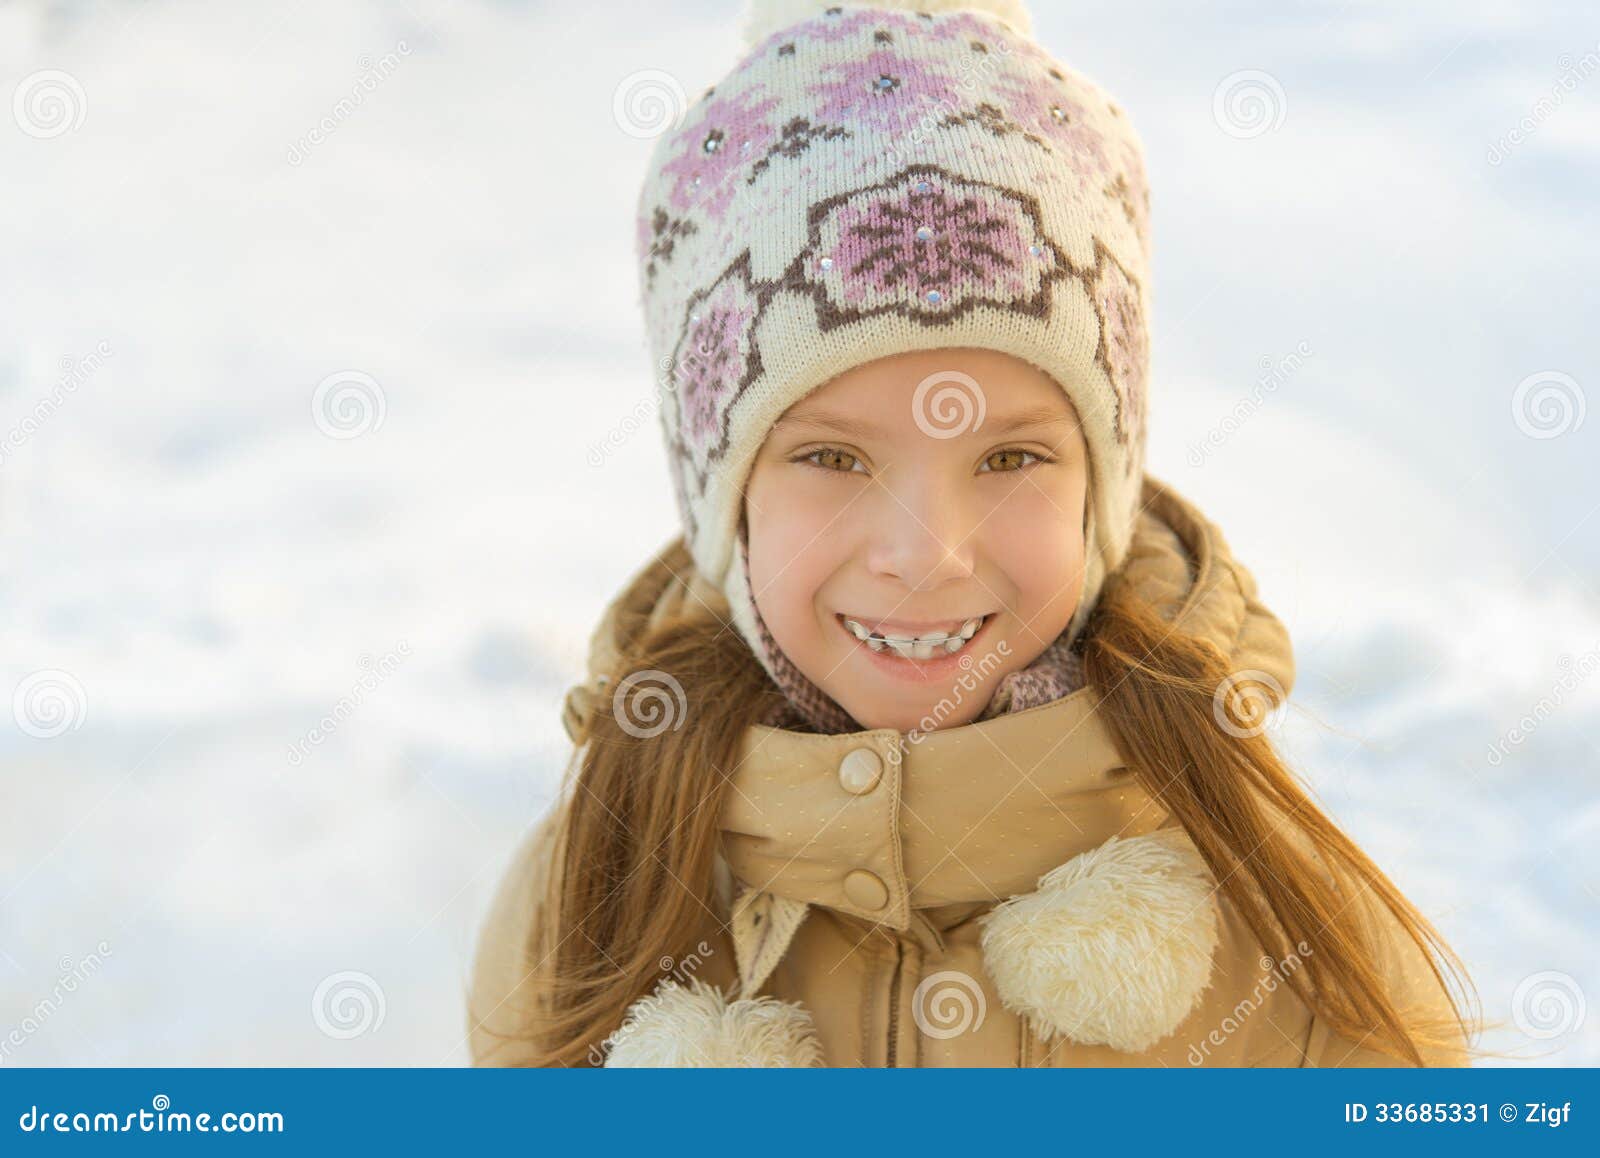 Little Girl in Warm Coat with Hood Stock Image - Image of childhood ...